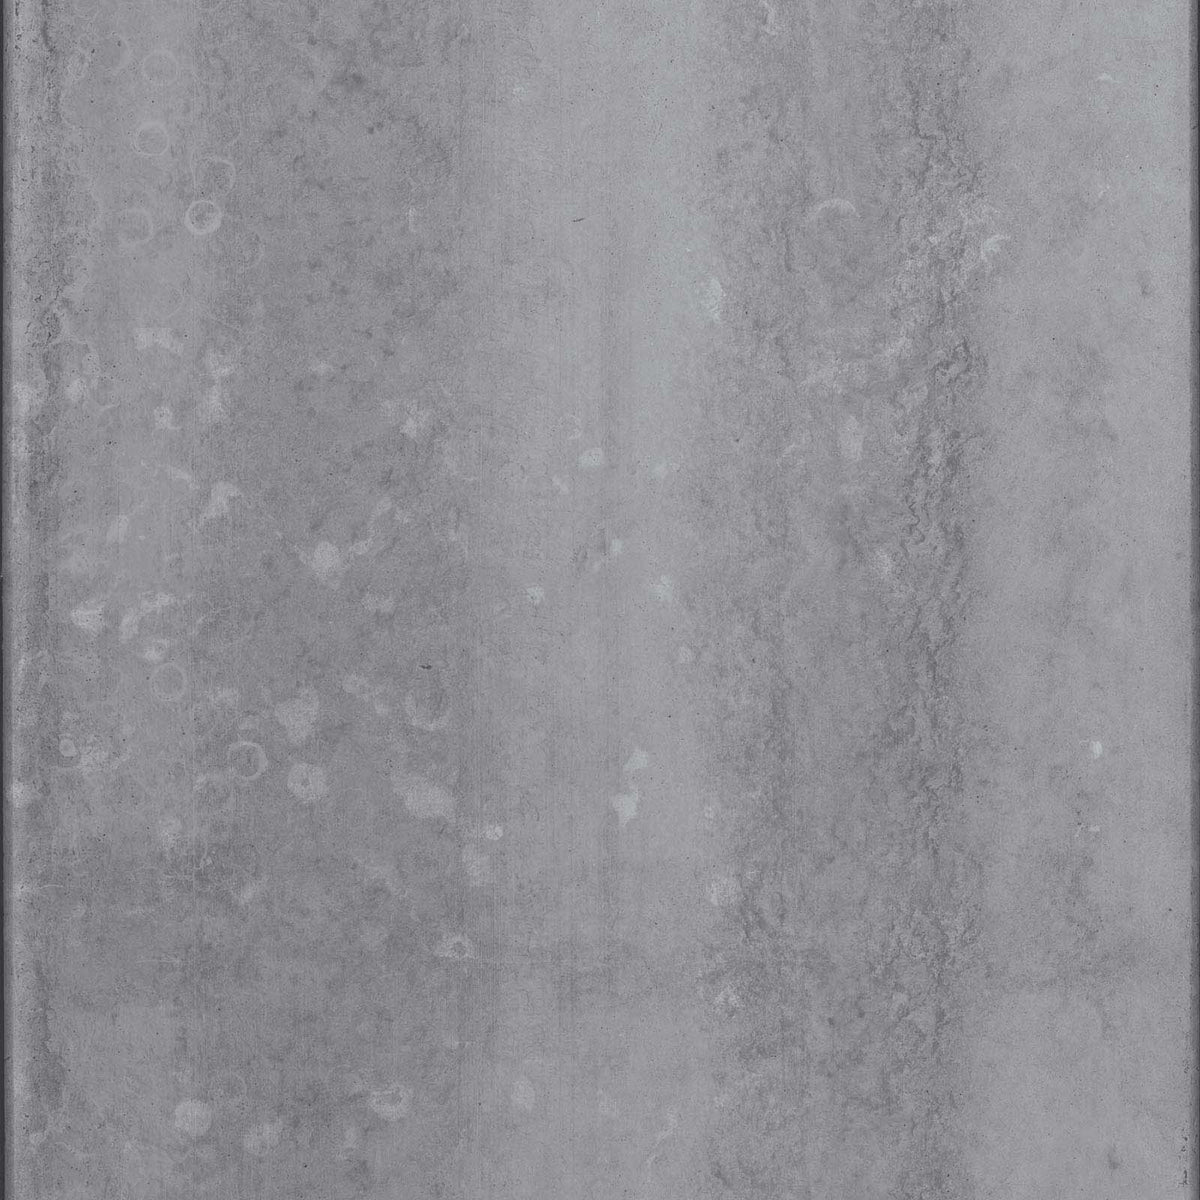 Papier peint CON-04 Water Drops Concrete par Piet Boon pour NLXL